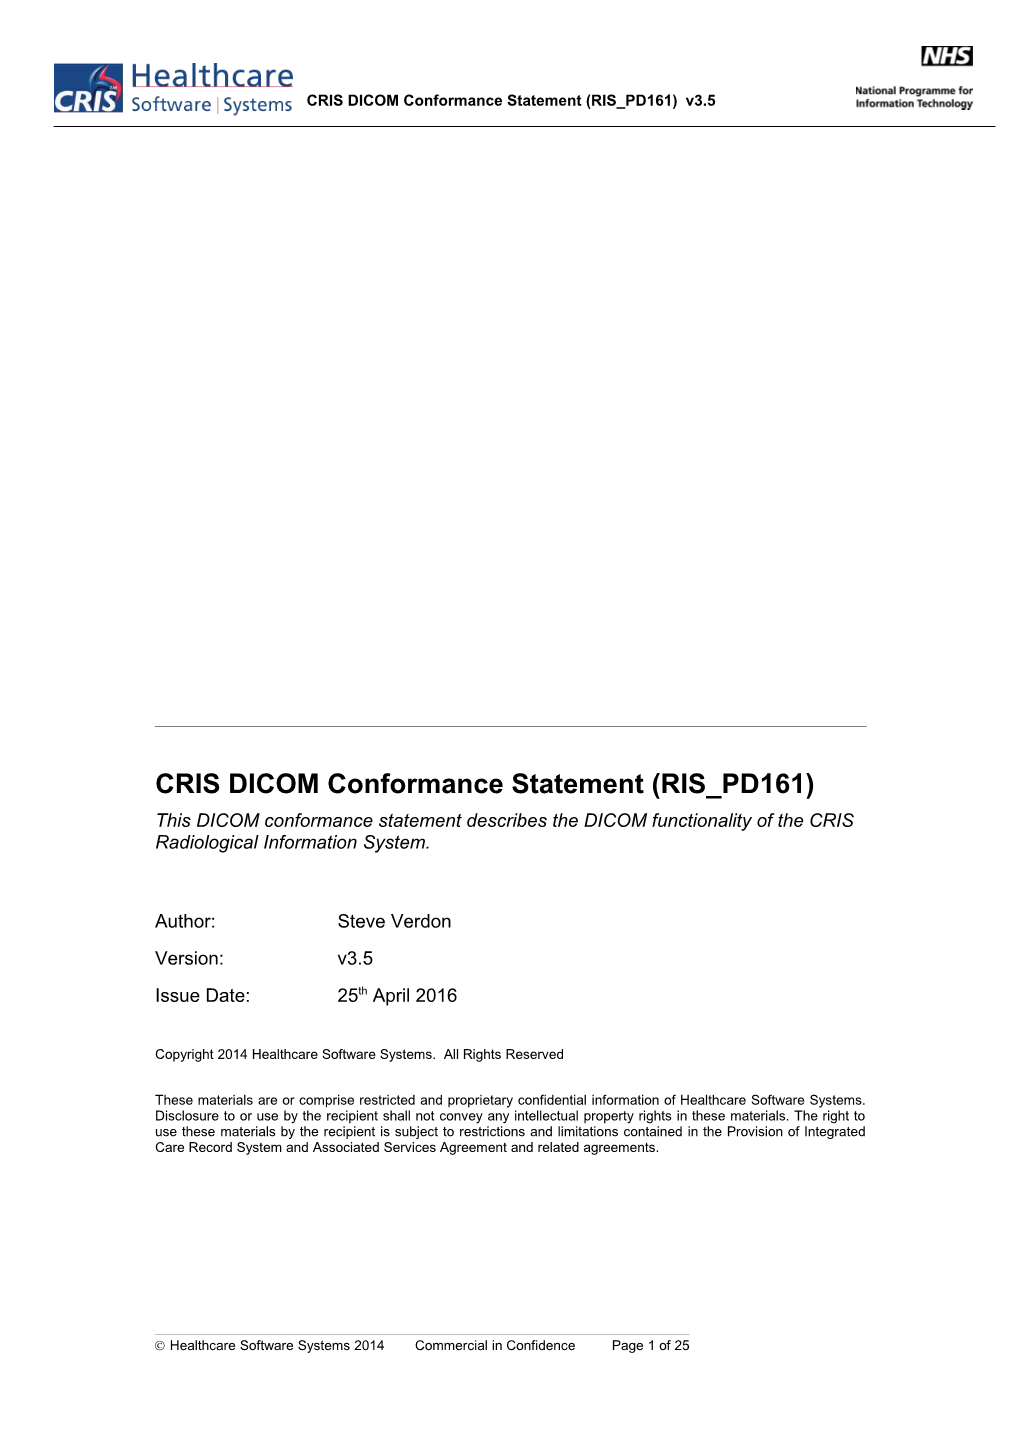 CRIS DICOM Conformance Statement (RIS PD161)